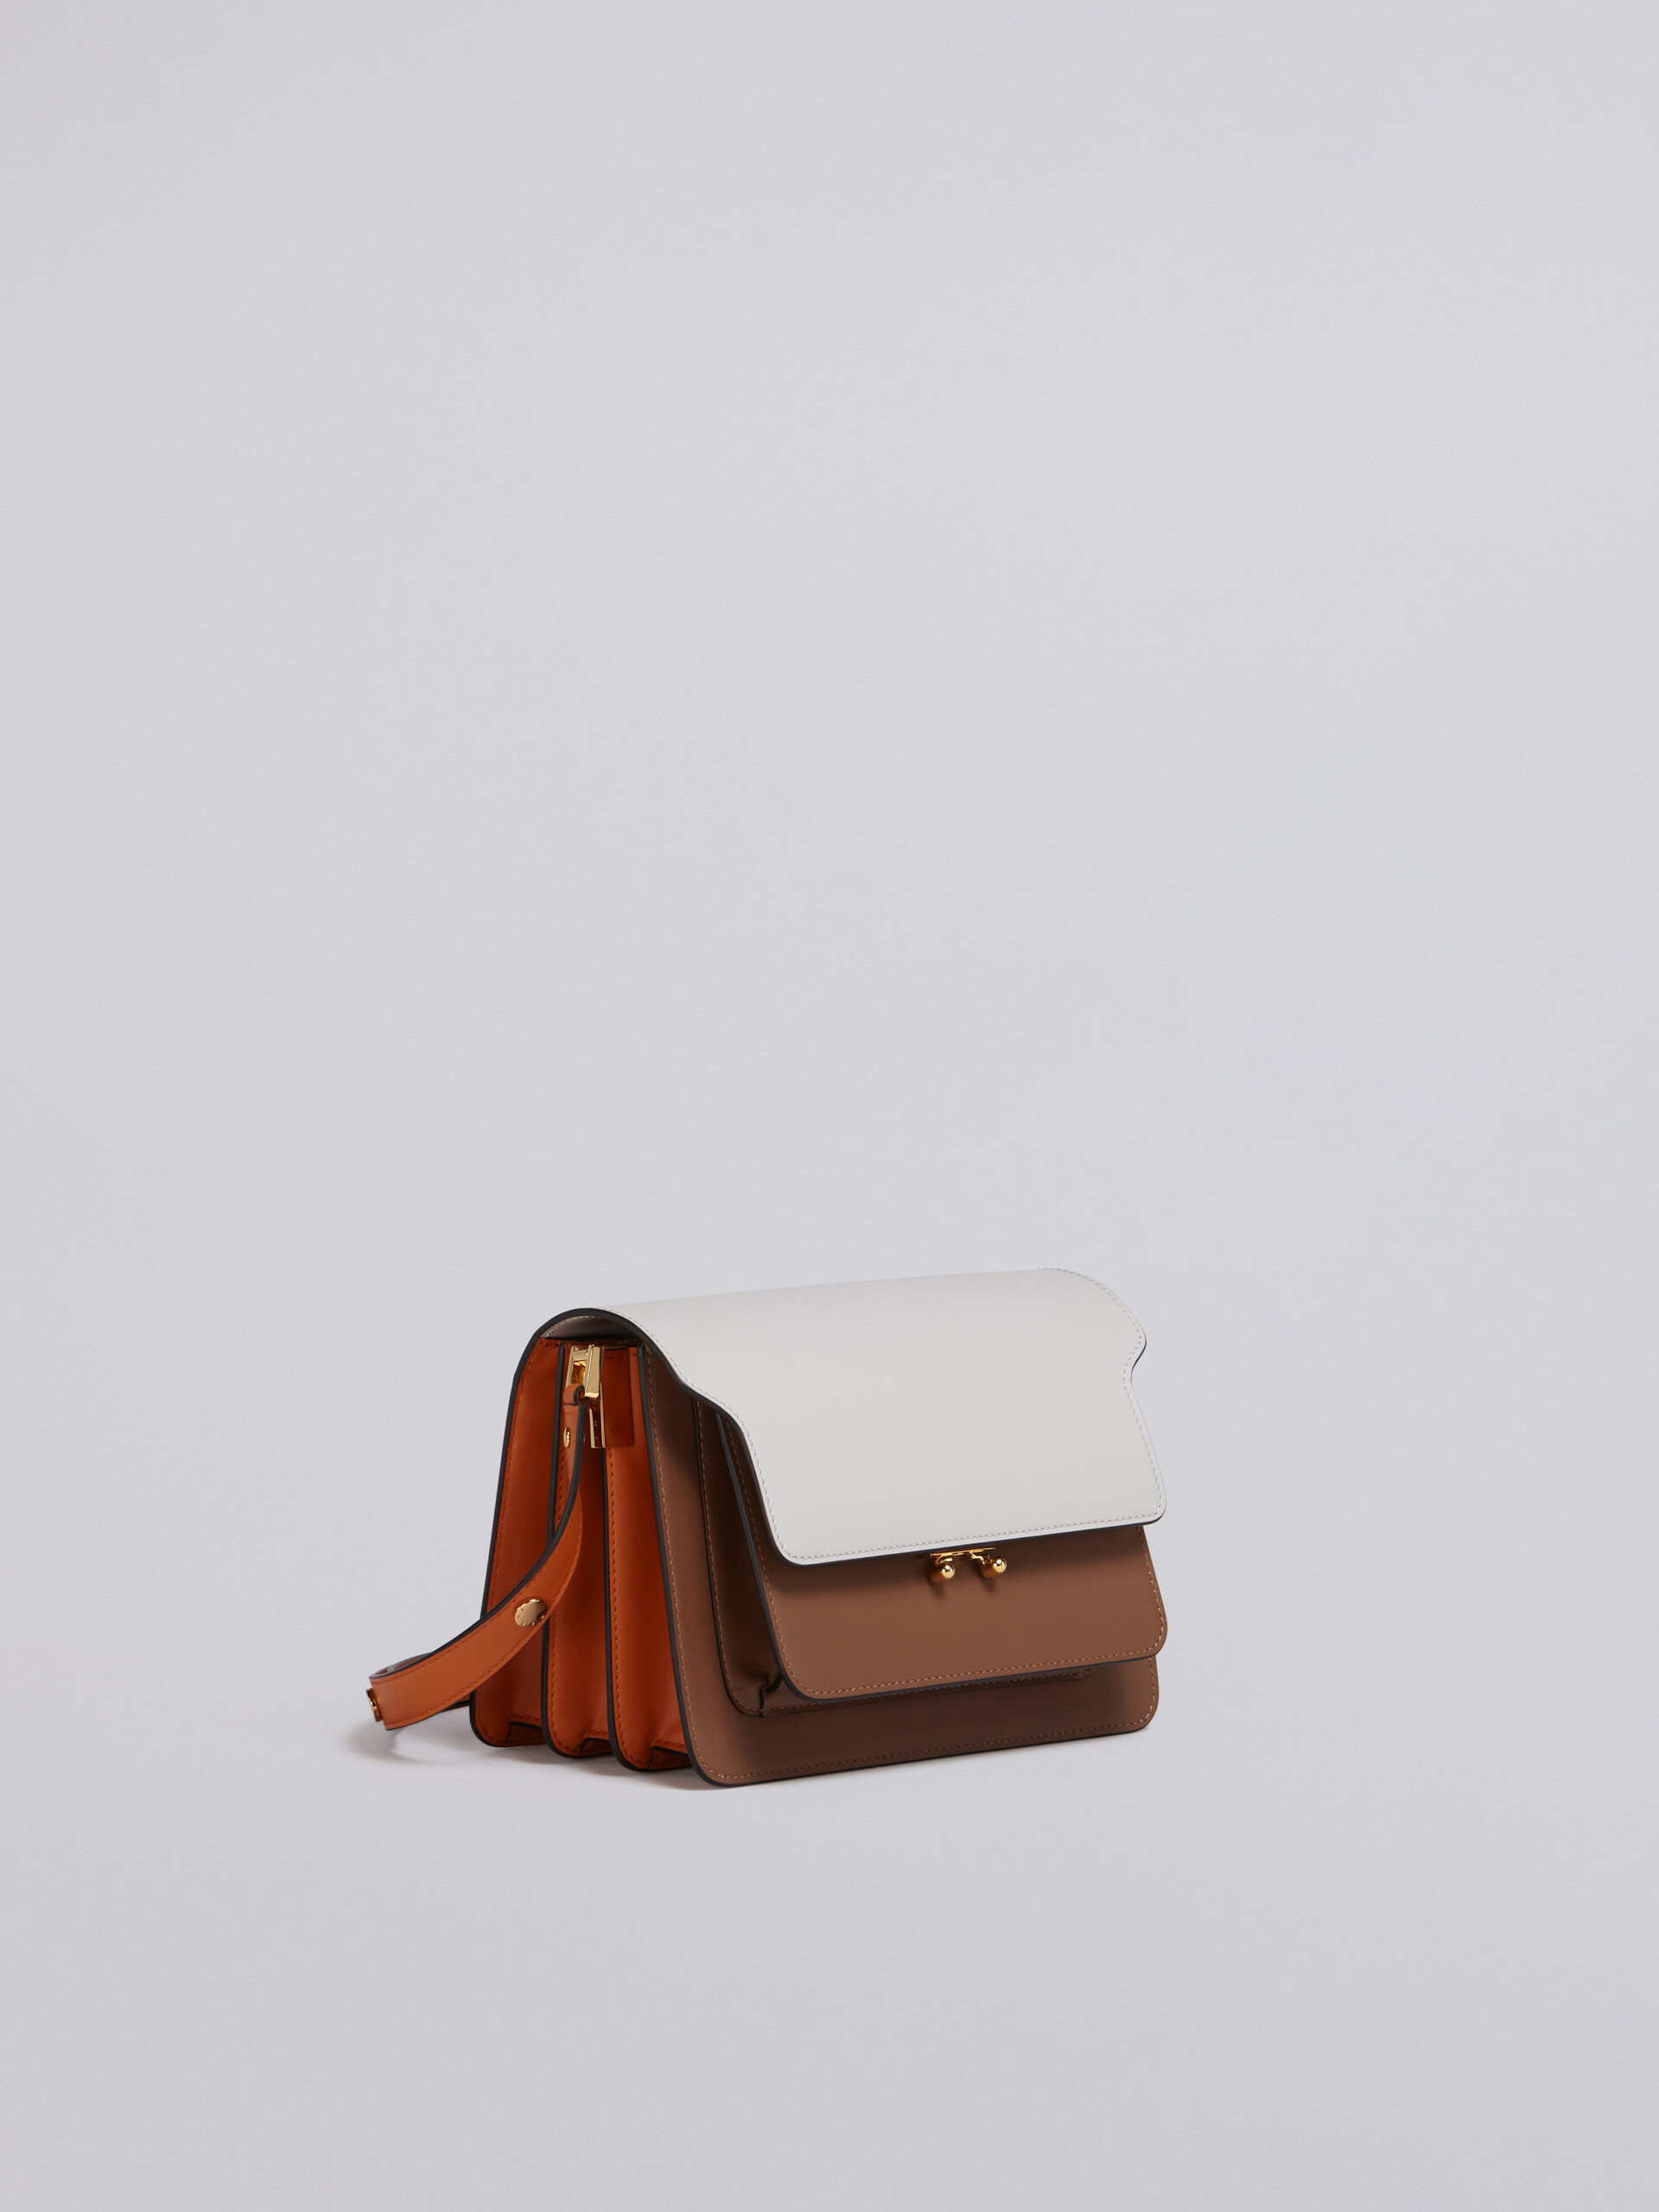 TRUNK Bag aus glattem Kalbsleder in Weiß, Braun und Orange - Schultertaschen - Image 5